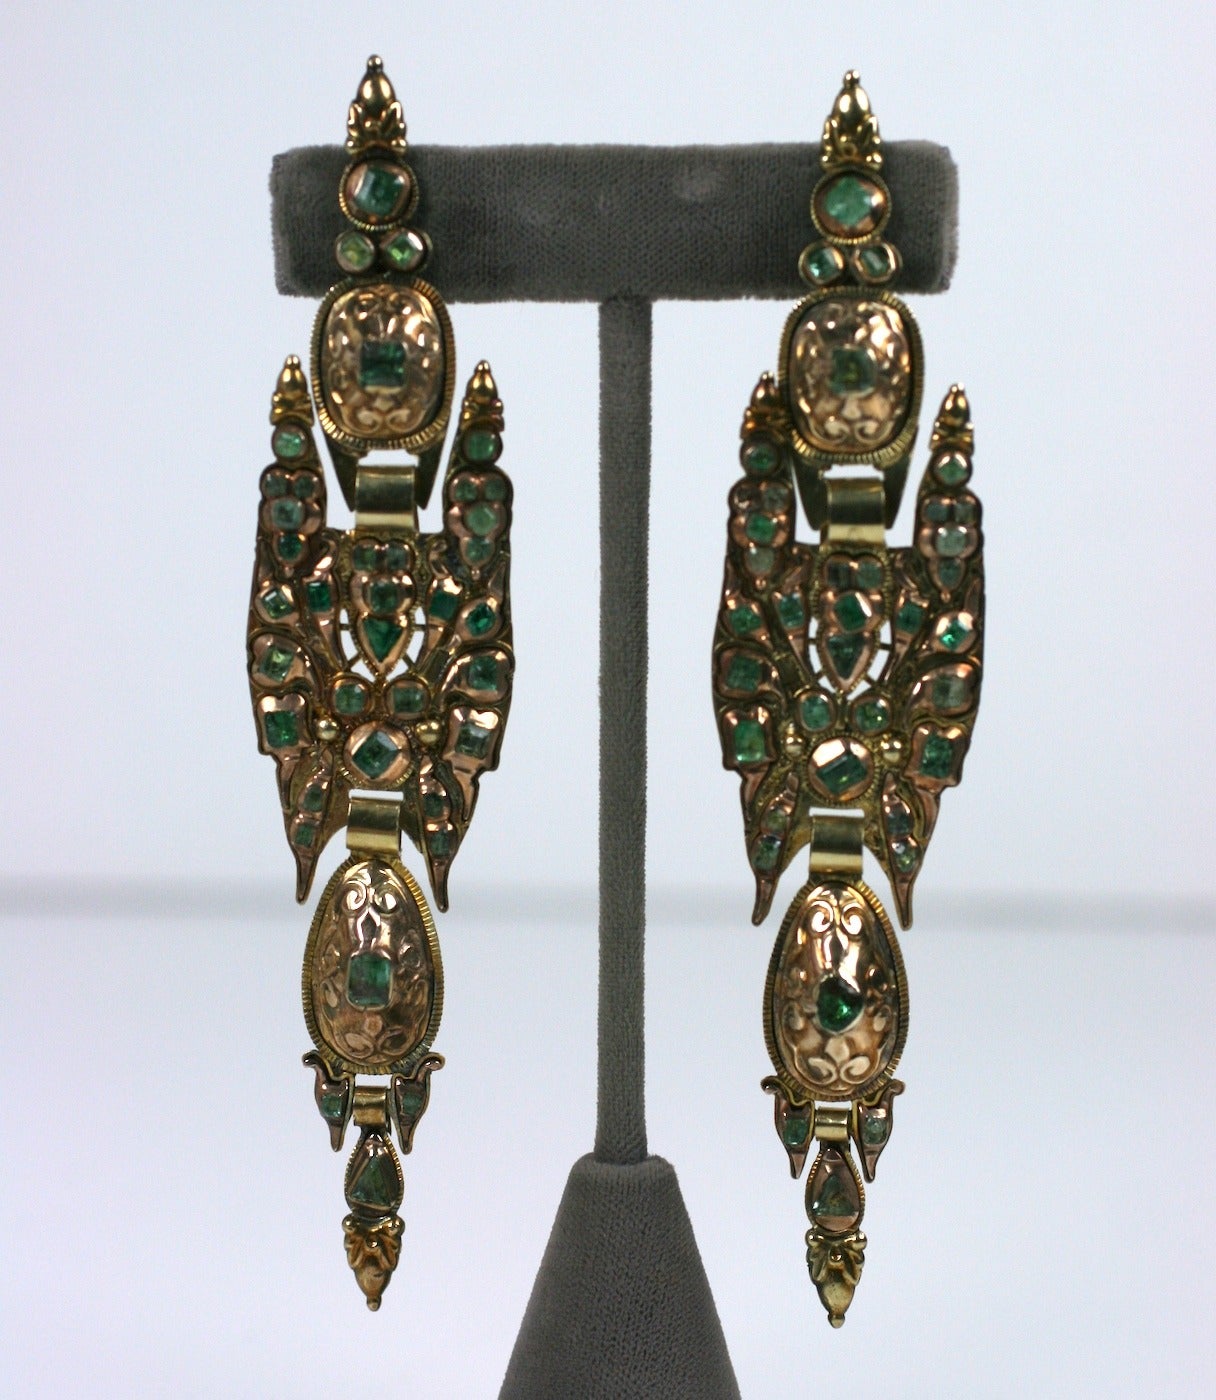 Iberische Smaragd-Ohrringe aus dem späten 18. Jahrhundert mit großem Maßstab. 
Die verschiedenfarbigen und geschliffenen Smaragde sind in den traditionellen Formen dieser spanischen Region hoch in die Goldfassungen eingelassen. Attraktiv und groß